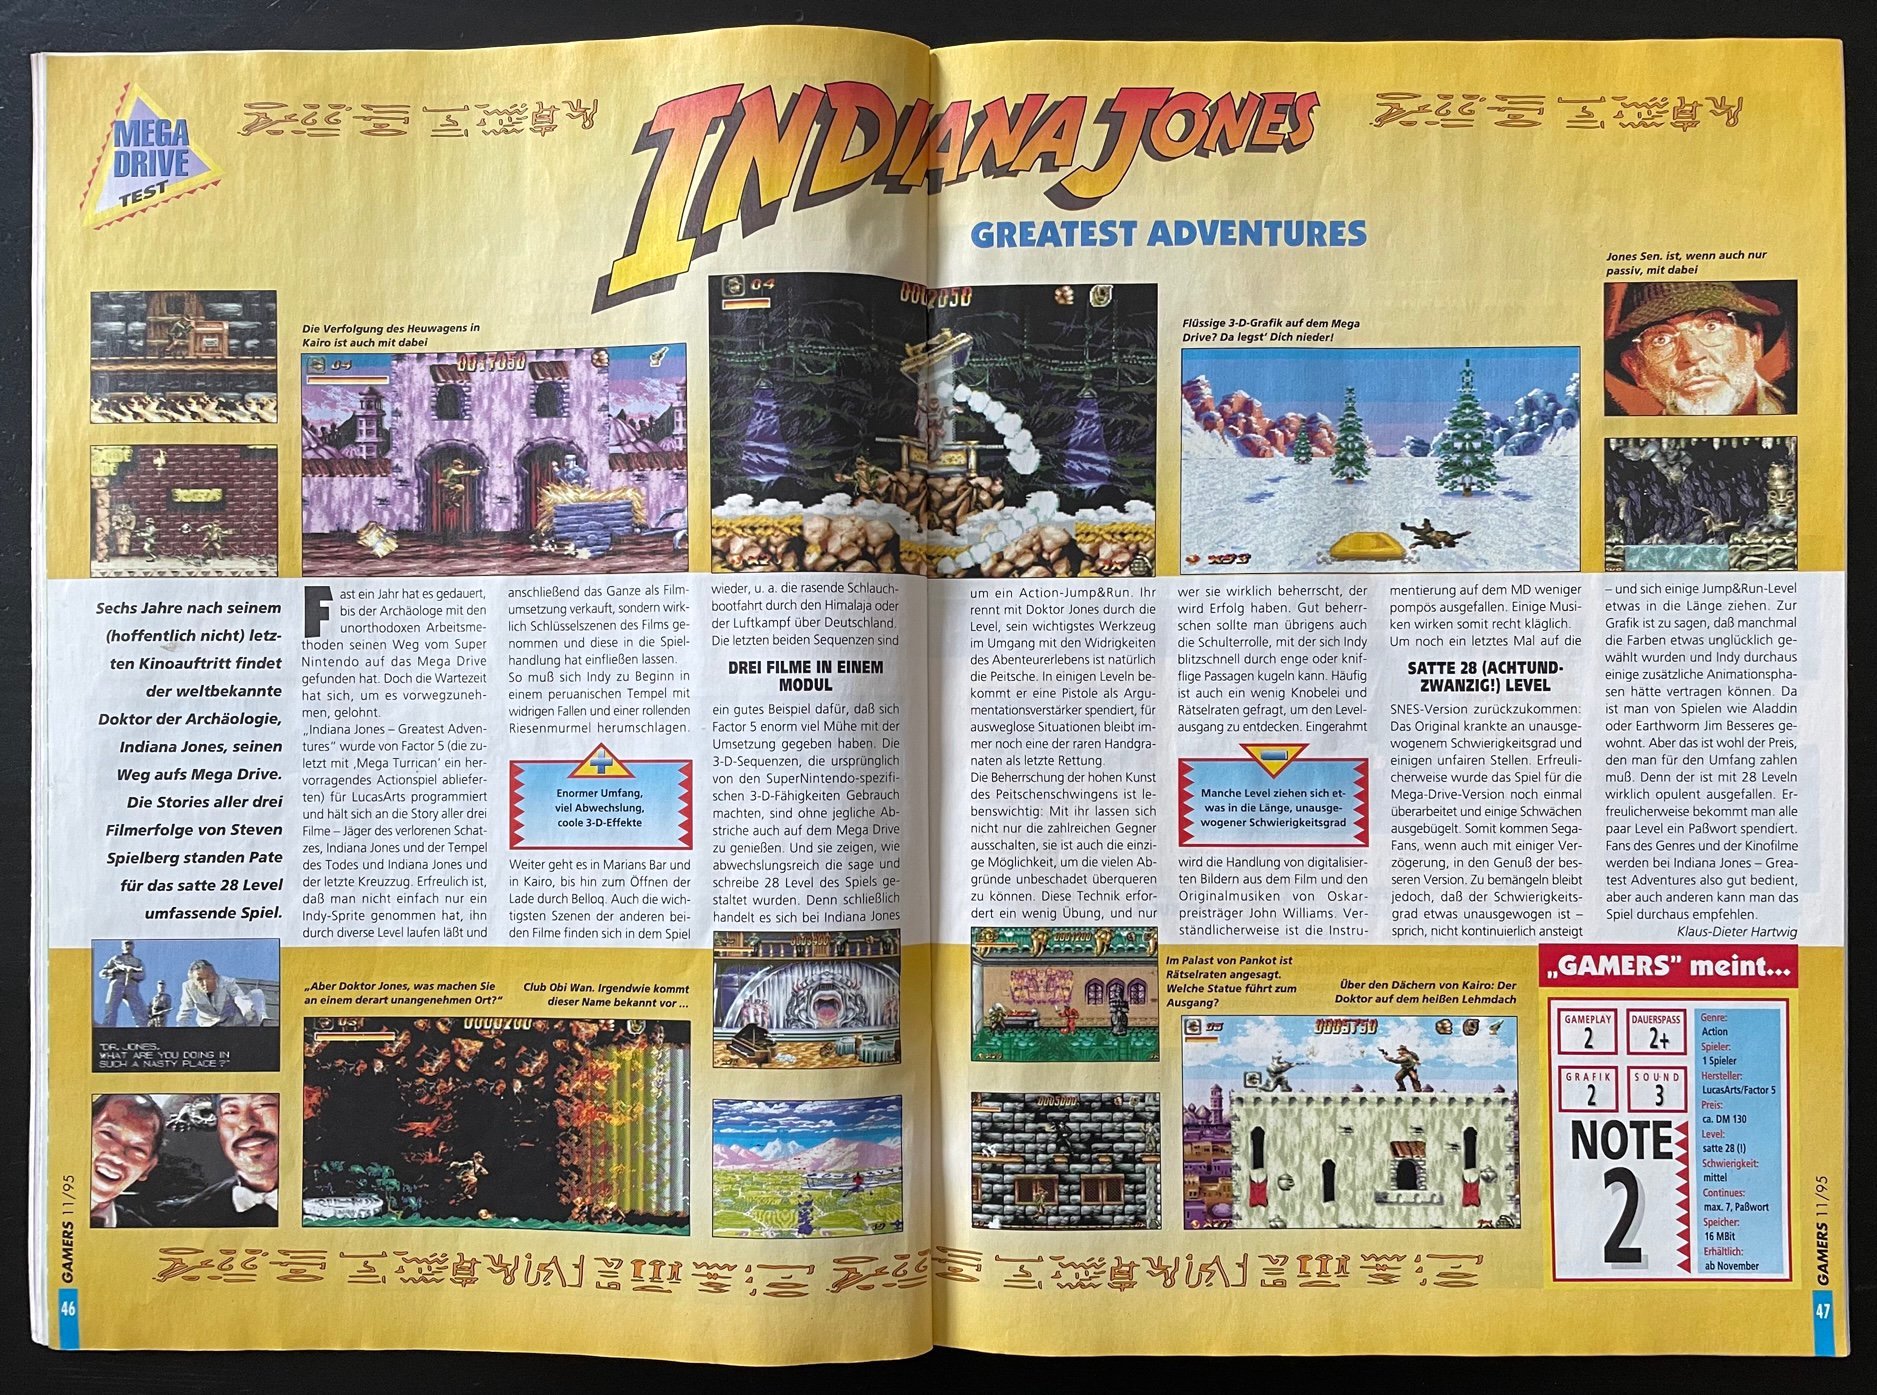 Der Test zum Spiel in der November-Ausgabe 1995 der deutschen Zeitschrift GAMERS. (Bild: Steffen Anton)